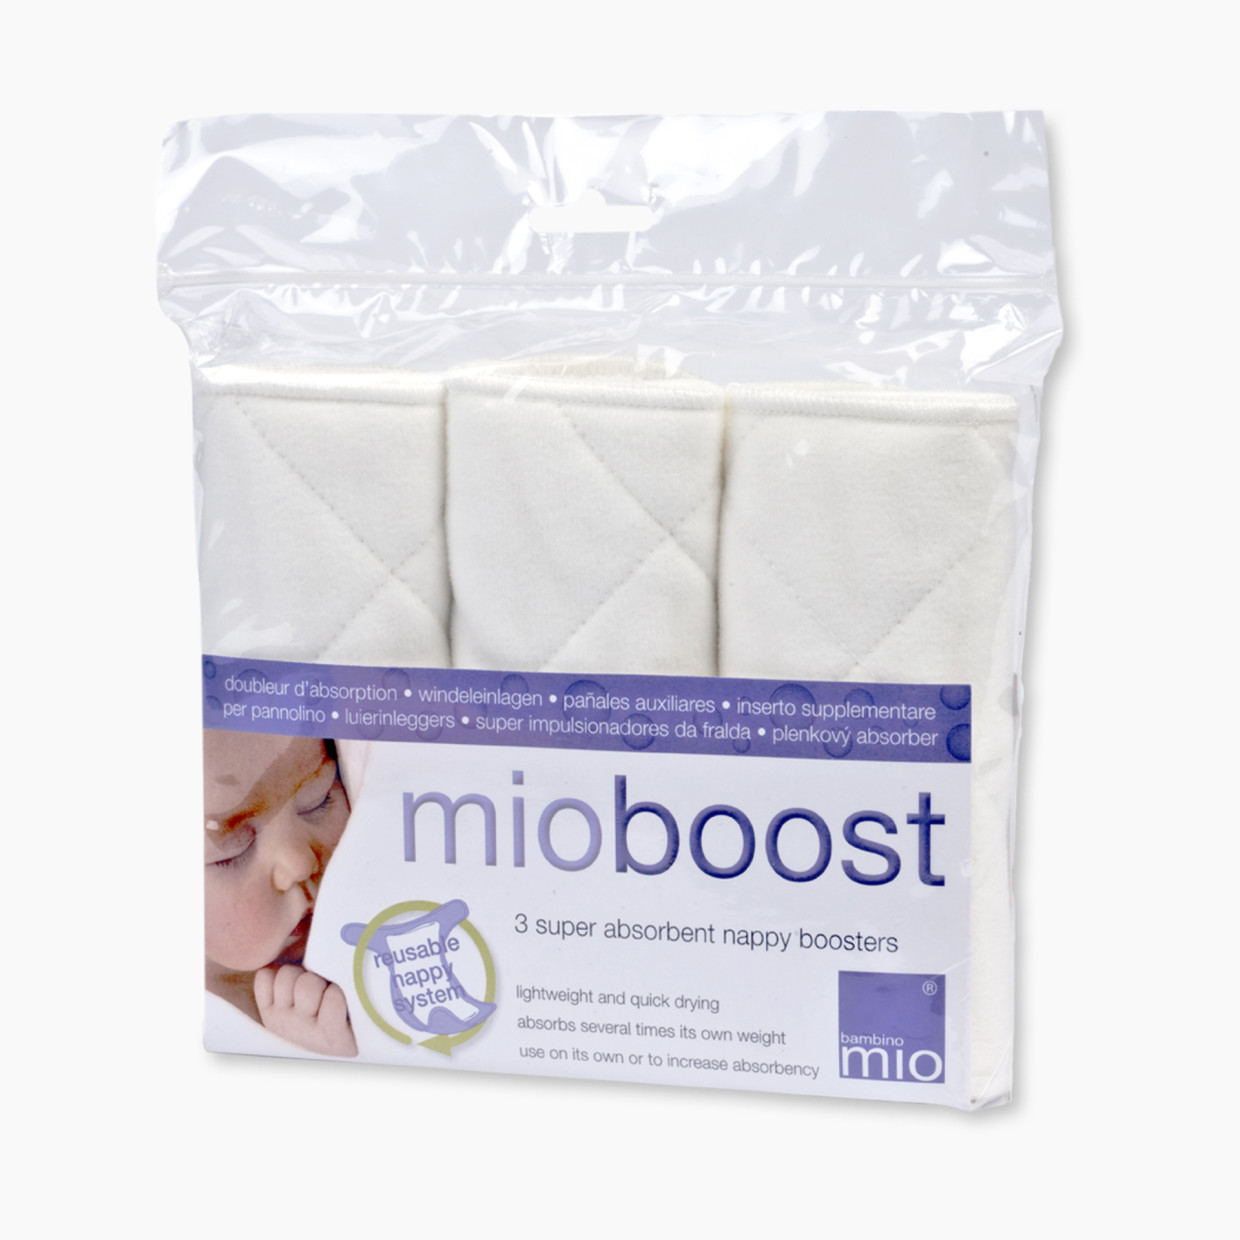 Bambino Mio Mioboost (Diaper Boosters) - White.